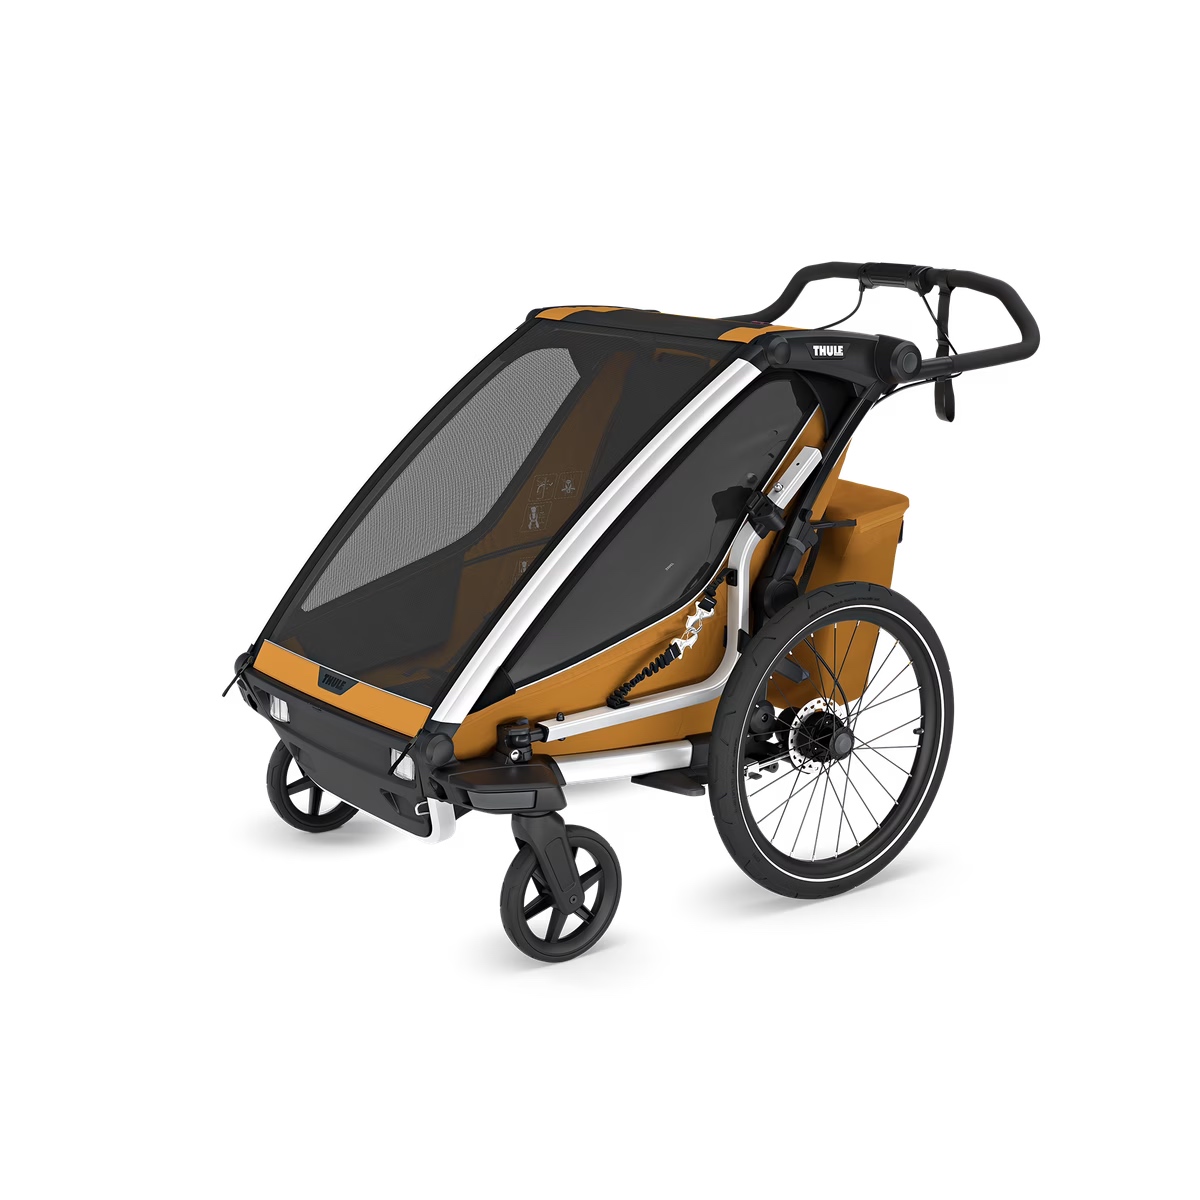 Thule-Chariot-Sport-2-dubbel-natuurlijk-goud-fietskar-3